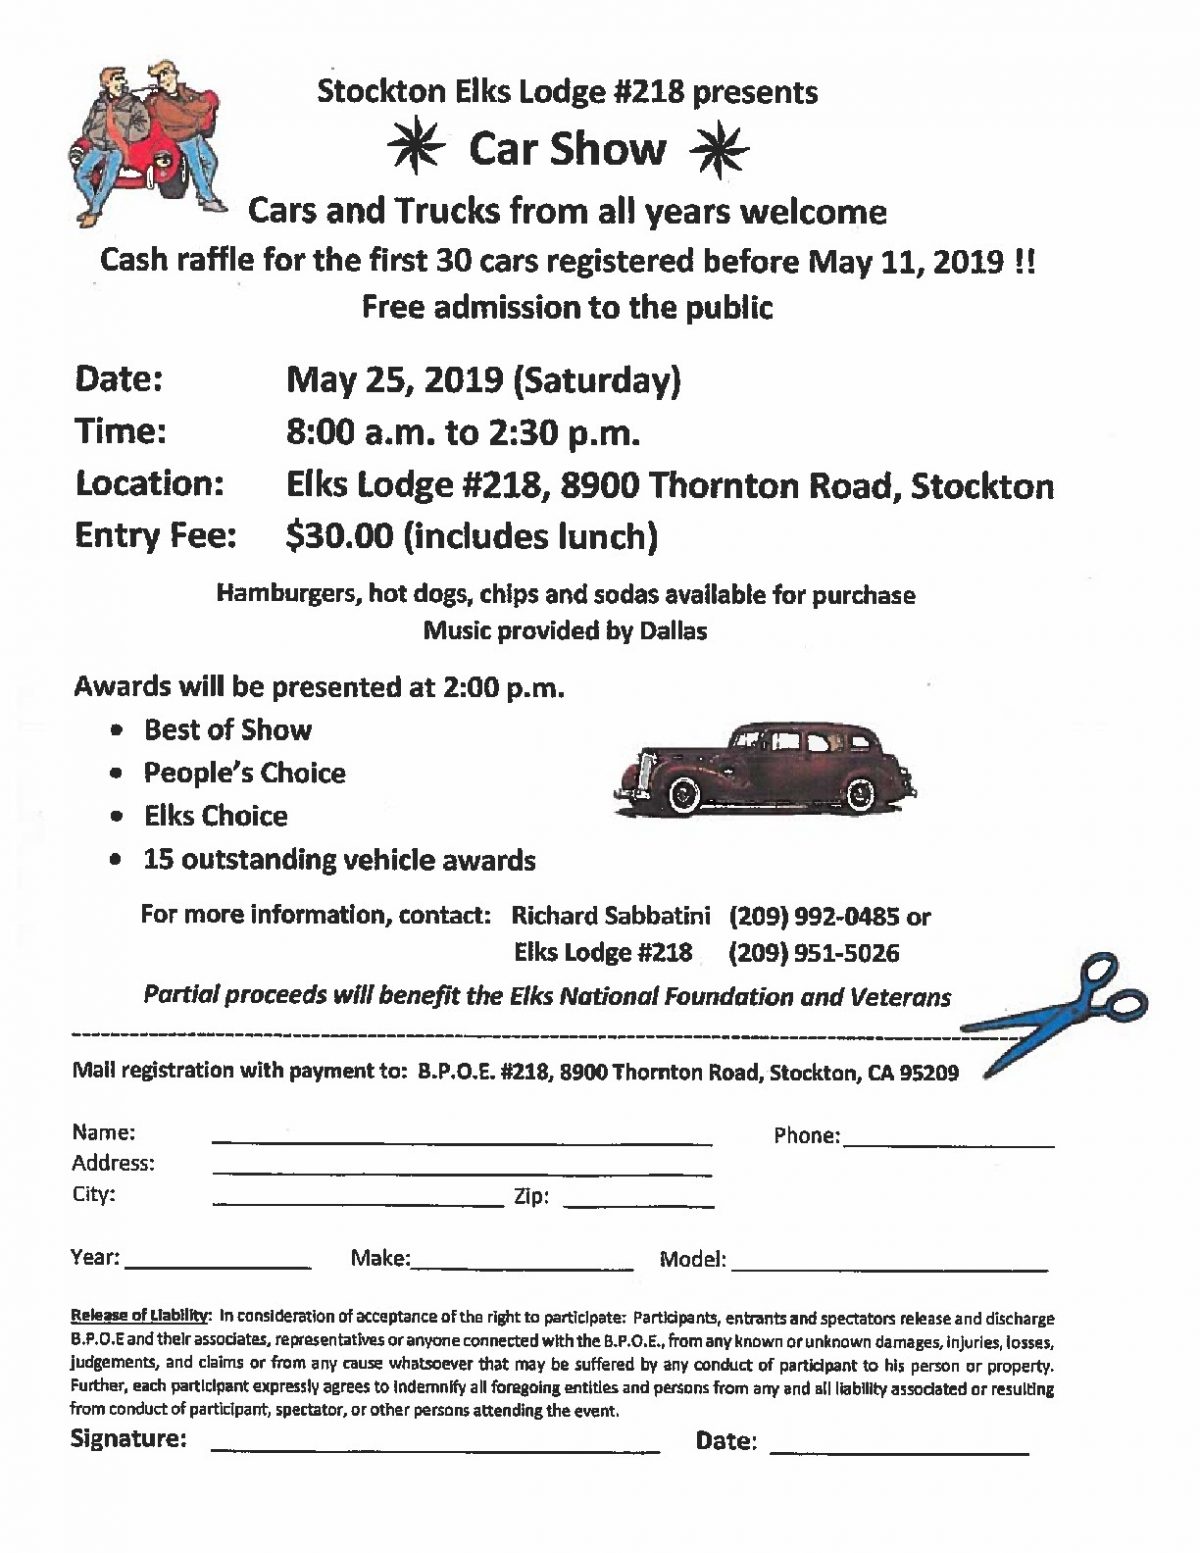 Stockton Elks Lodge Car Show NorCal Car Culture